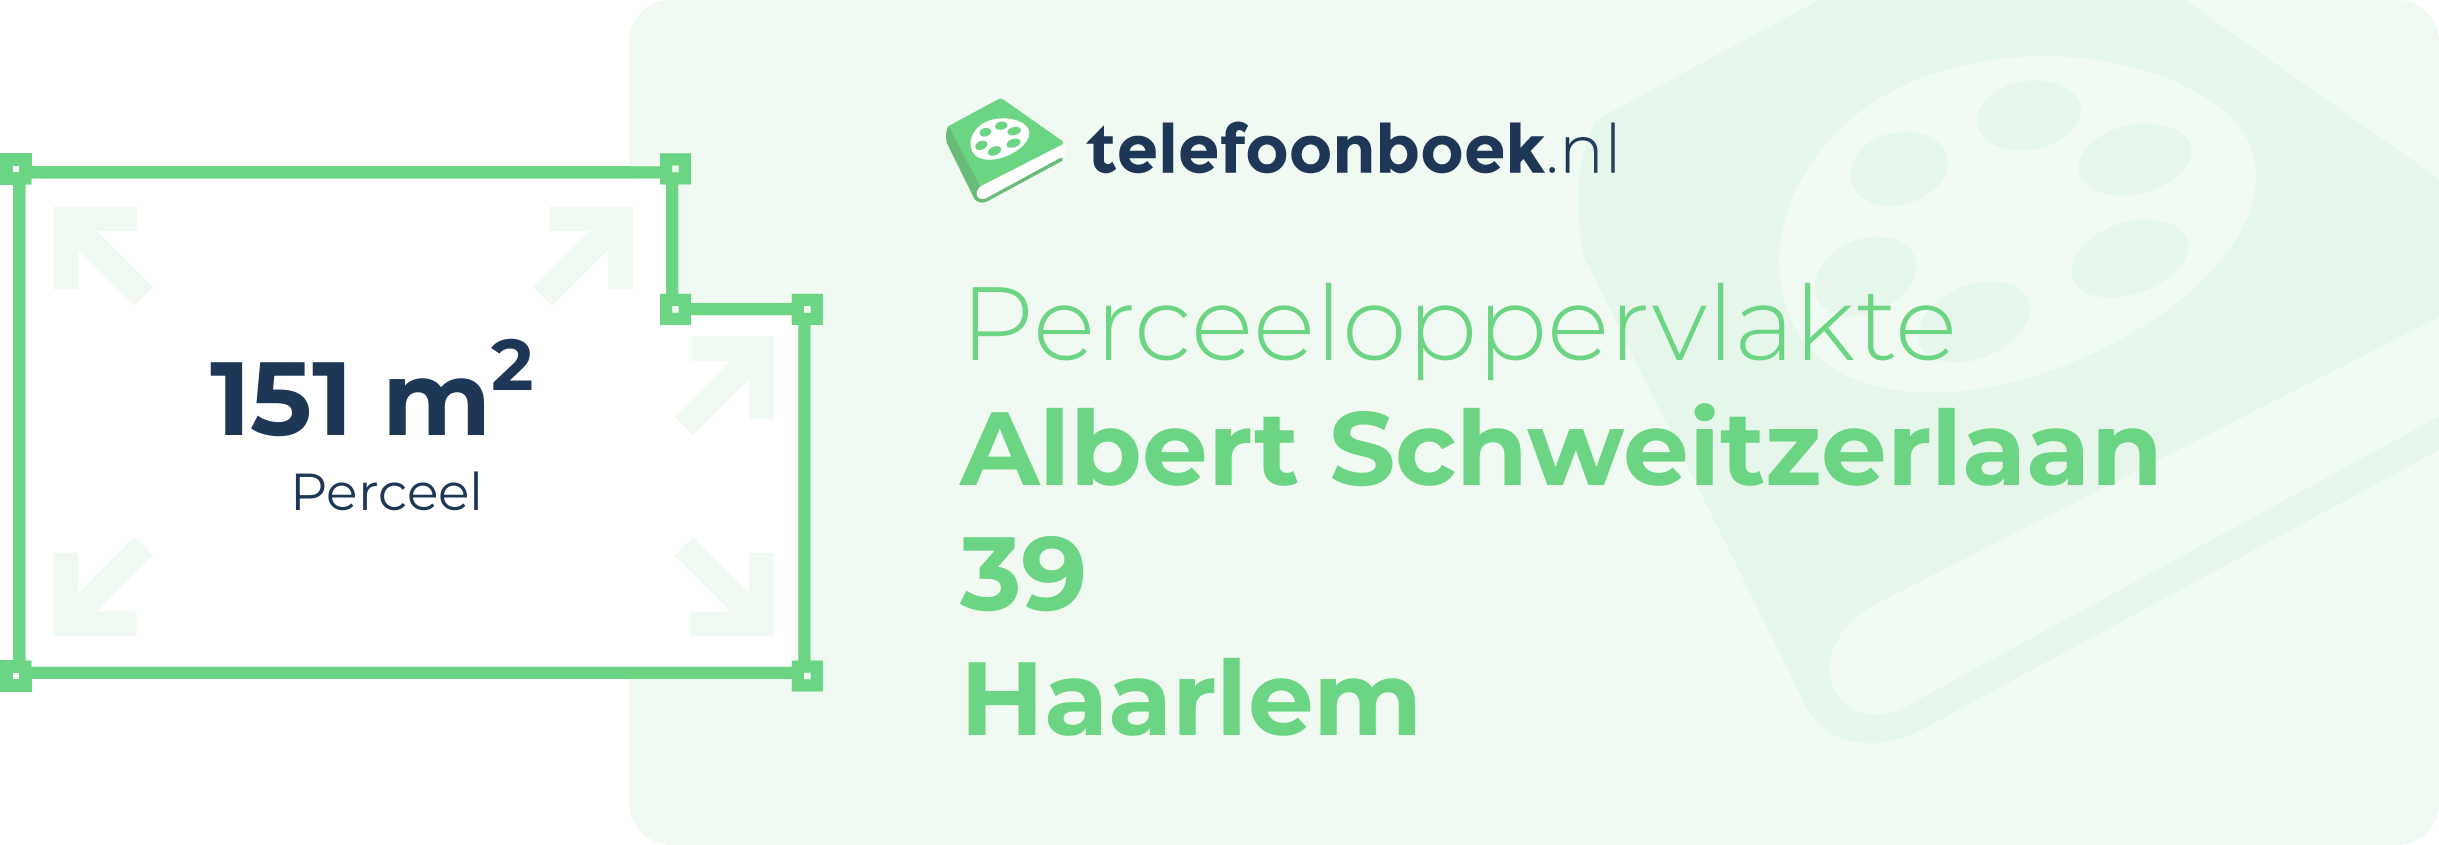 Perceeloppervlakte Albert Schweitzerlaan 39 Haarlem